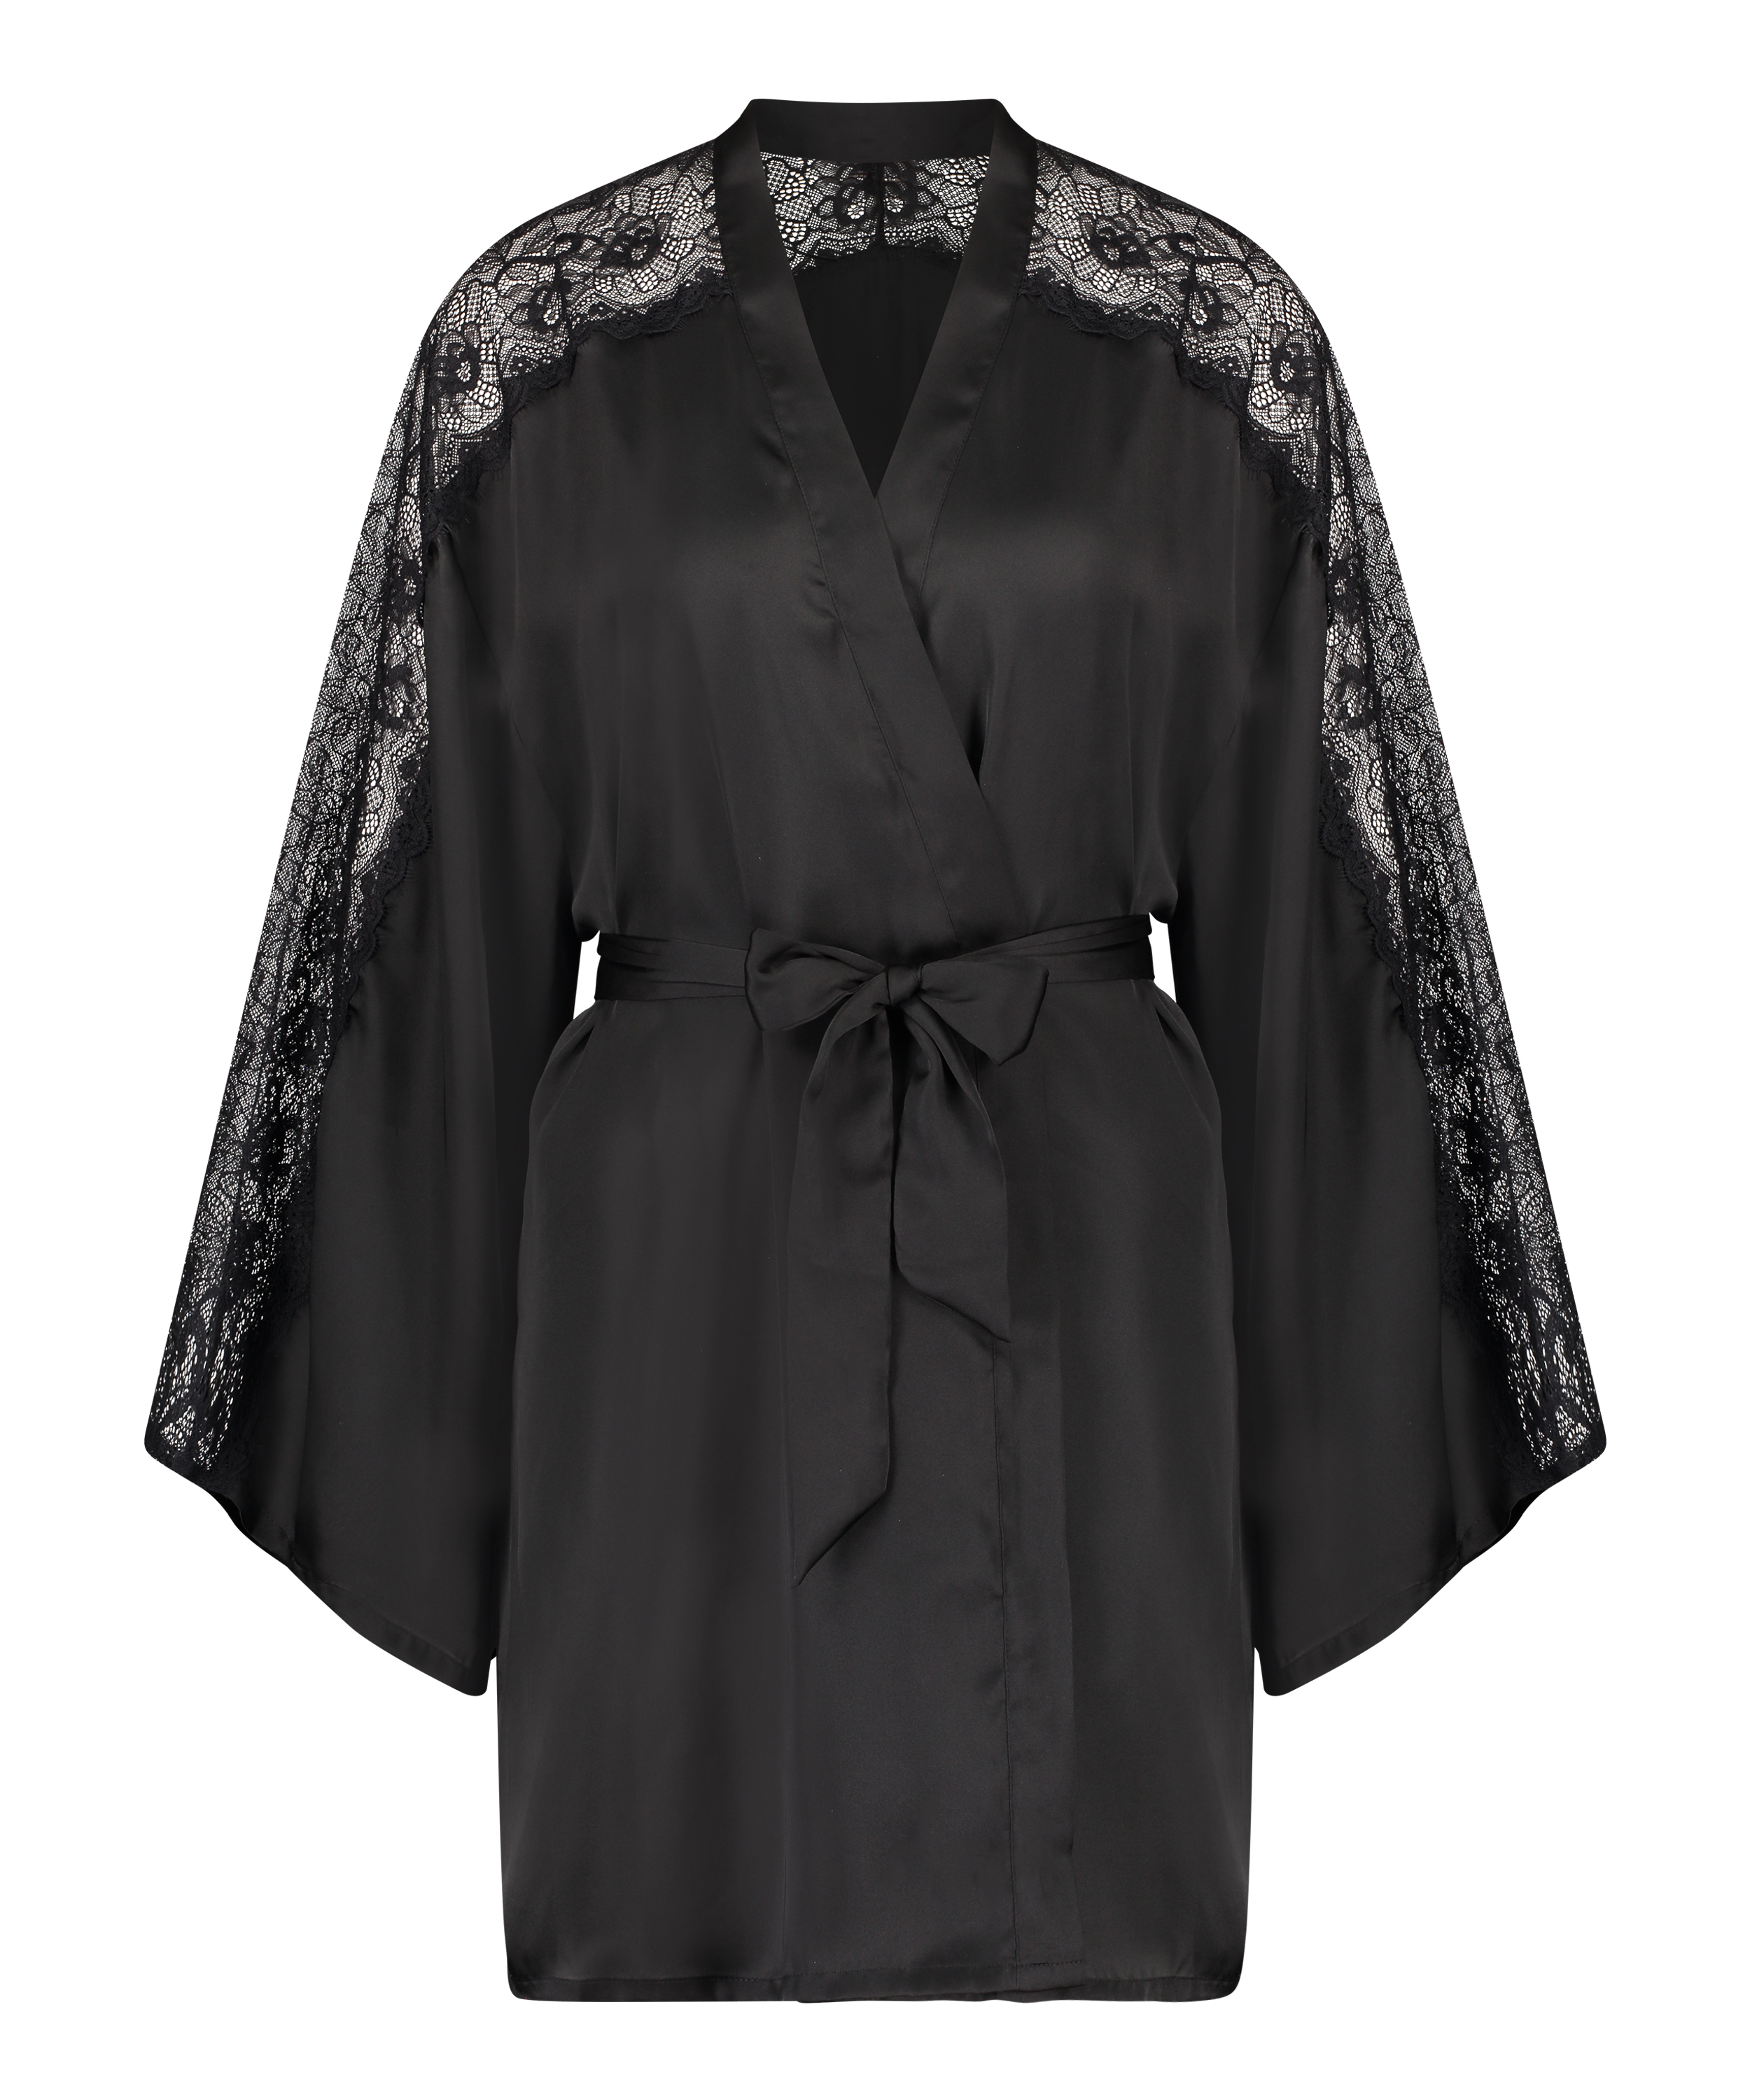 Kimono de satén y encaje, Negro, main